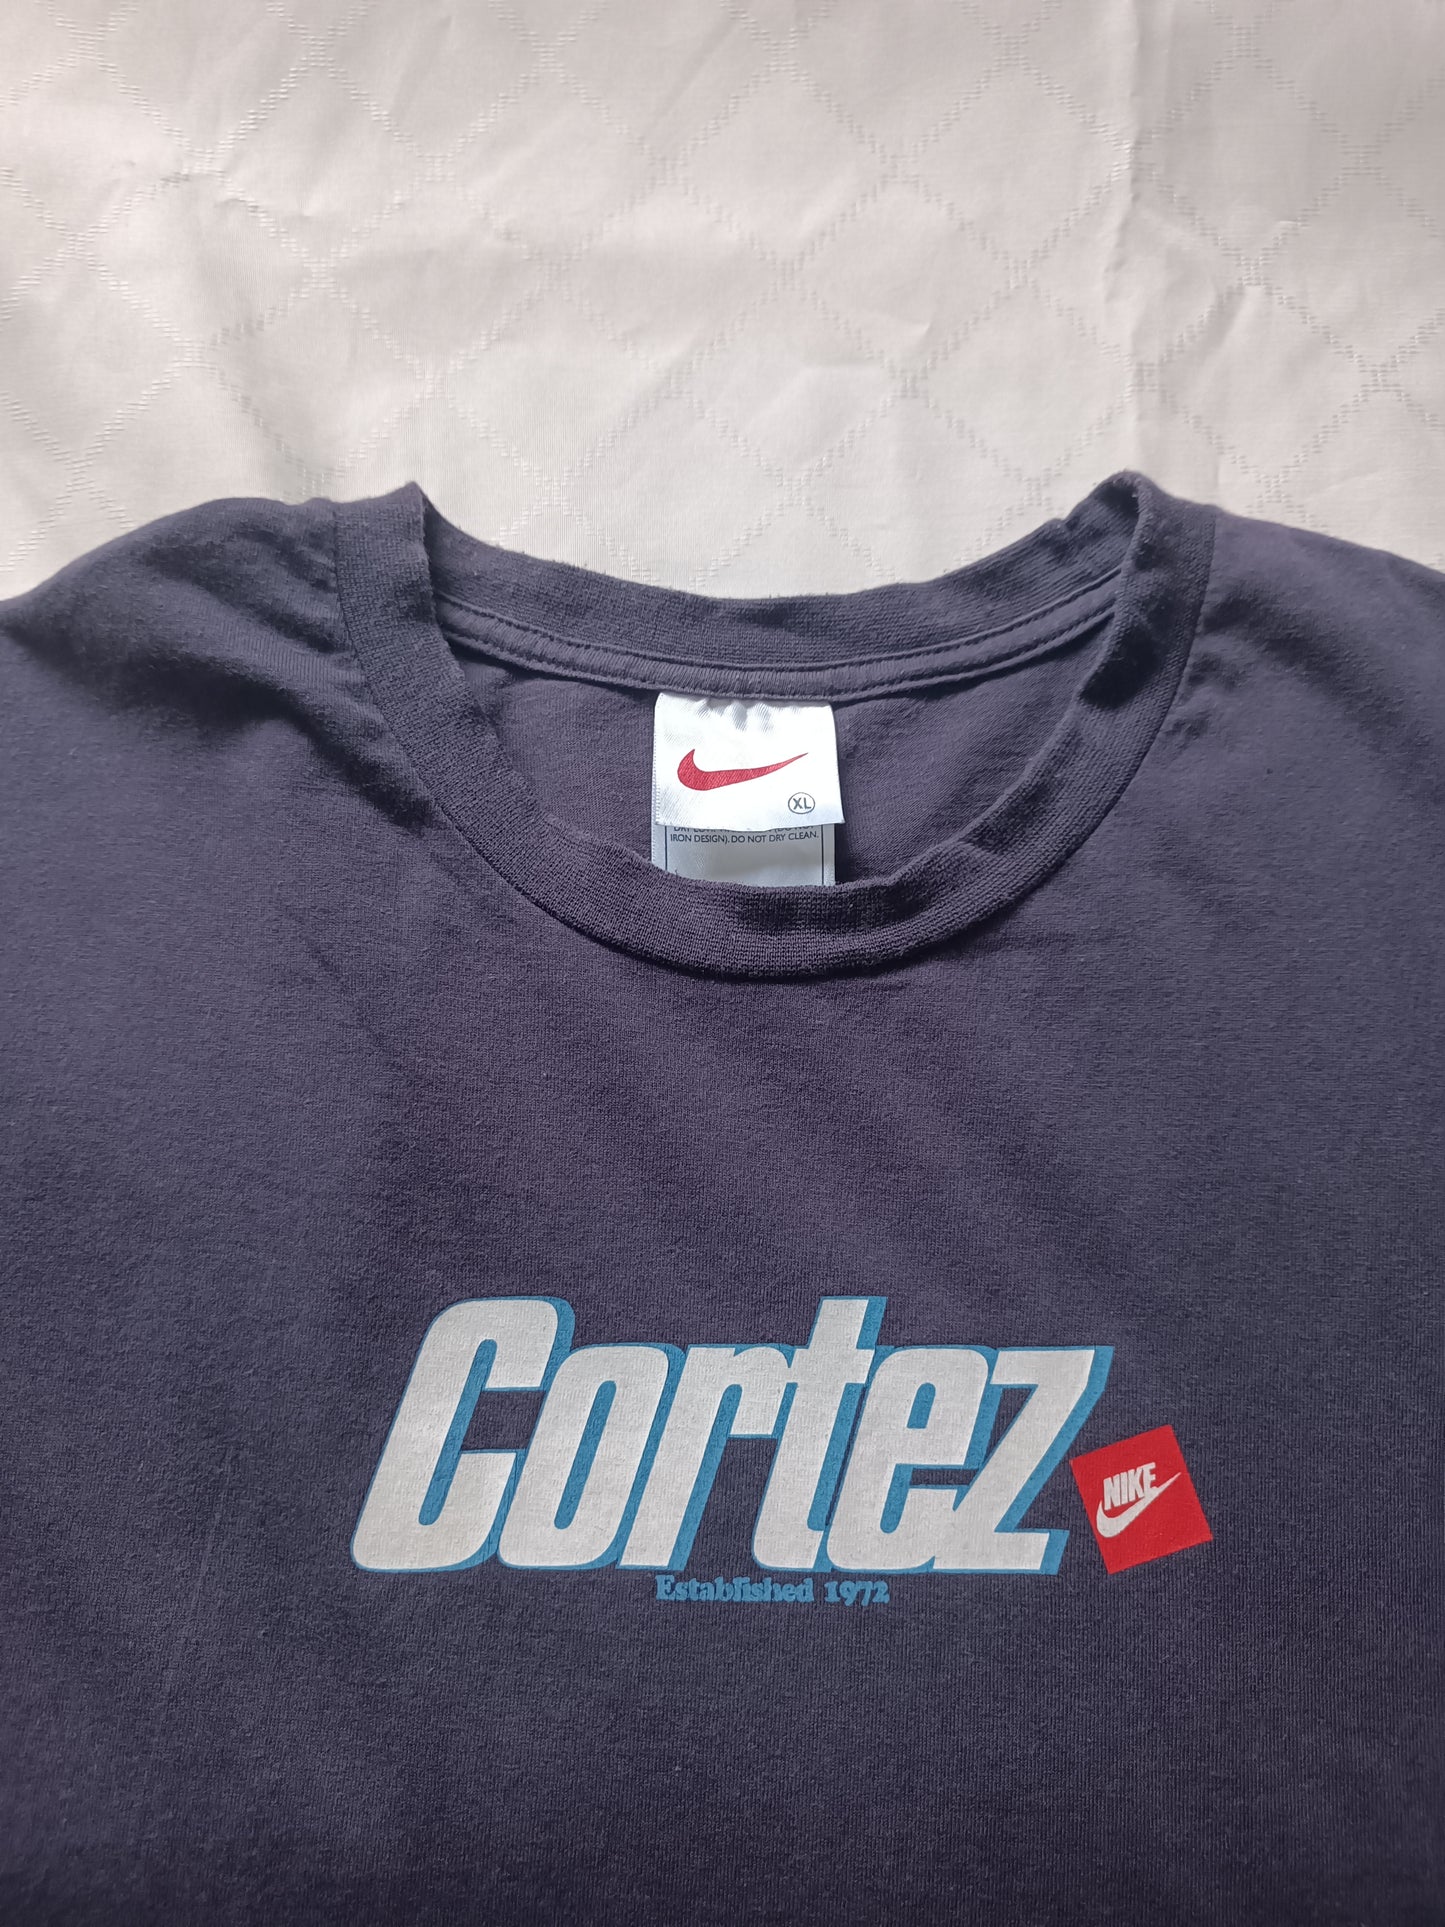 Nike Cortez - XL